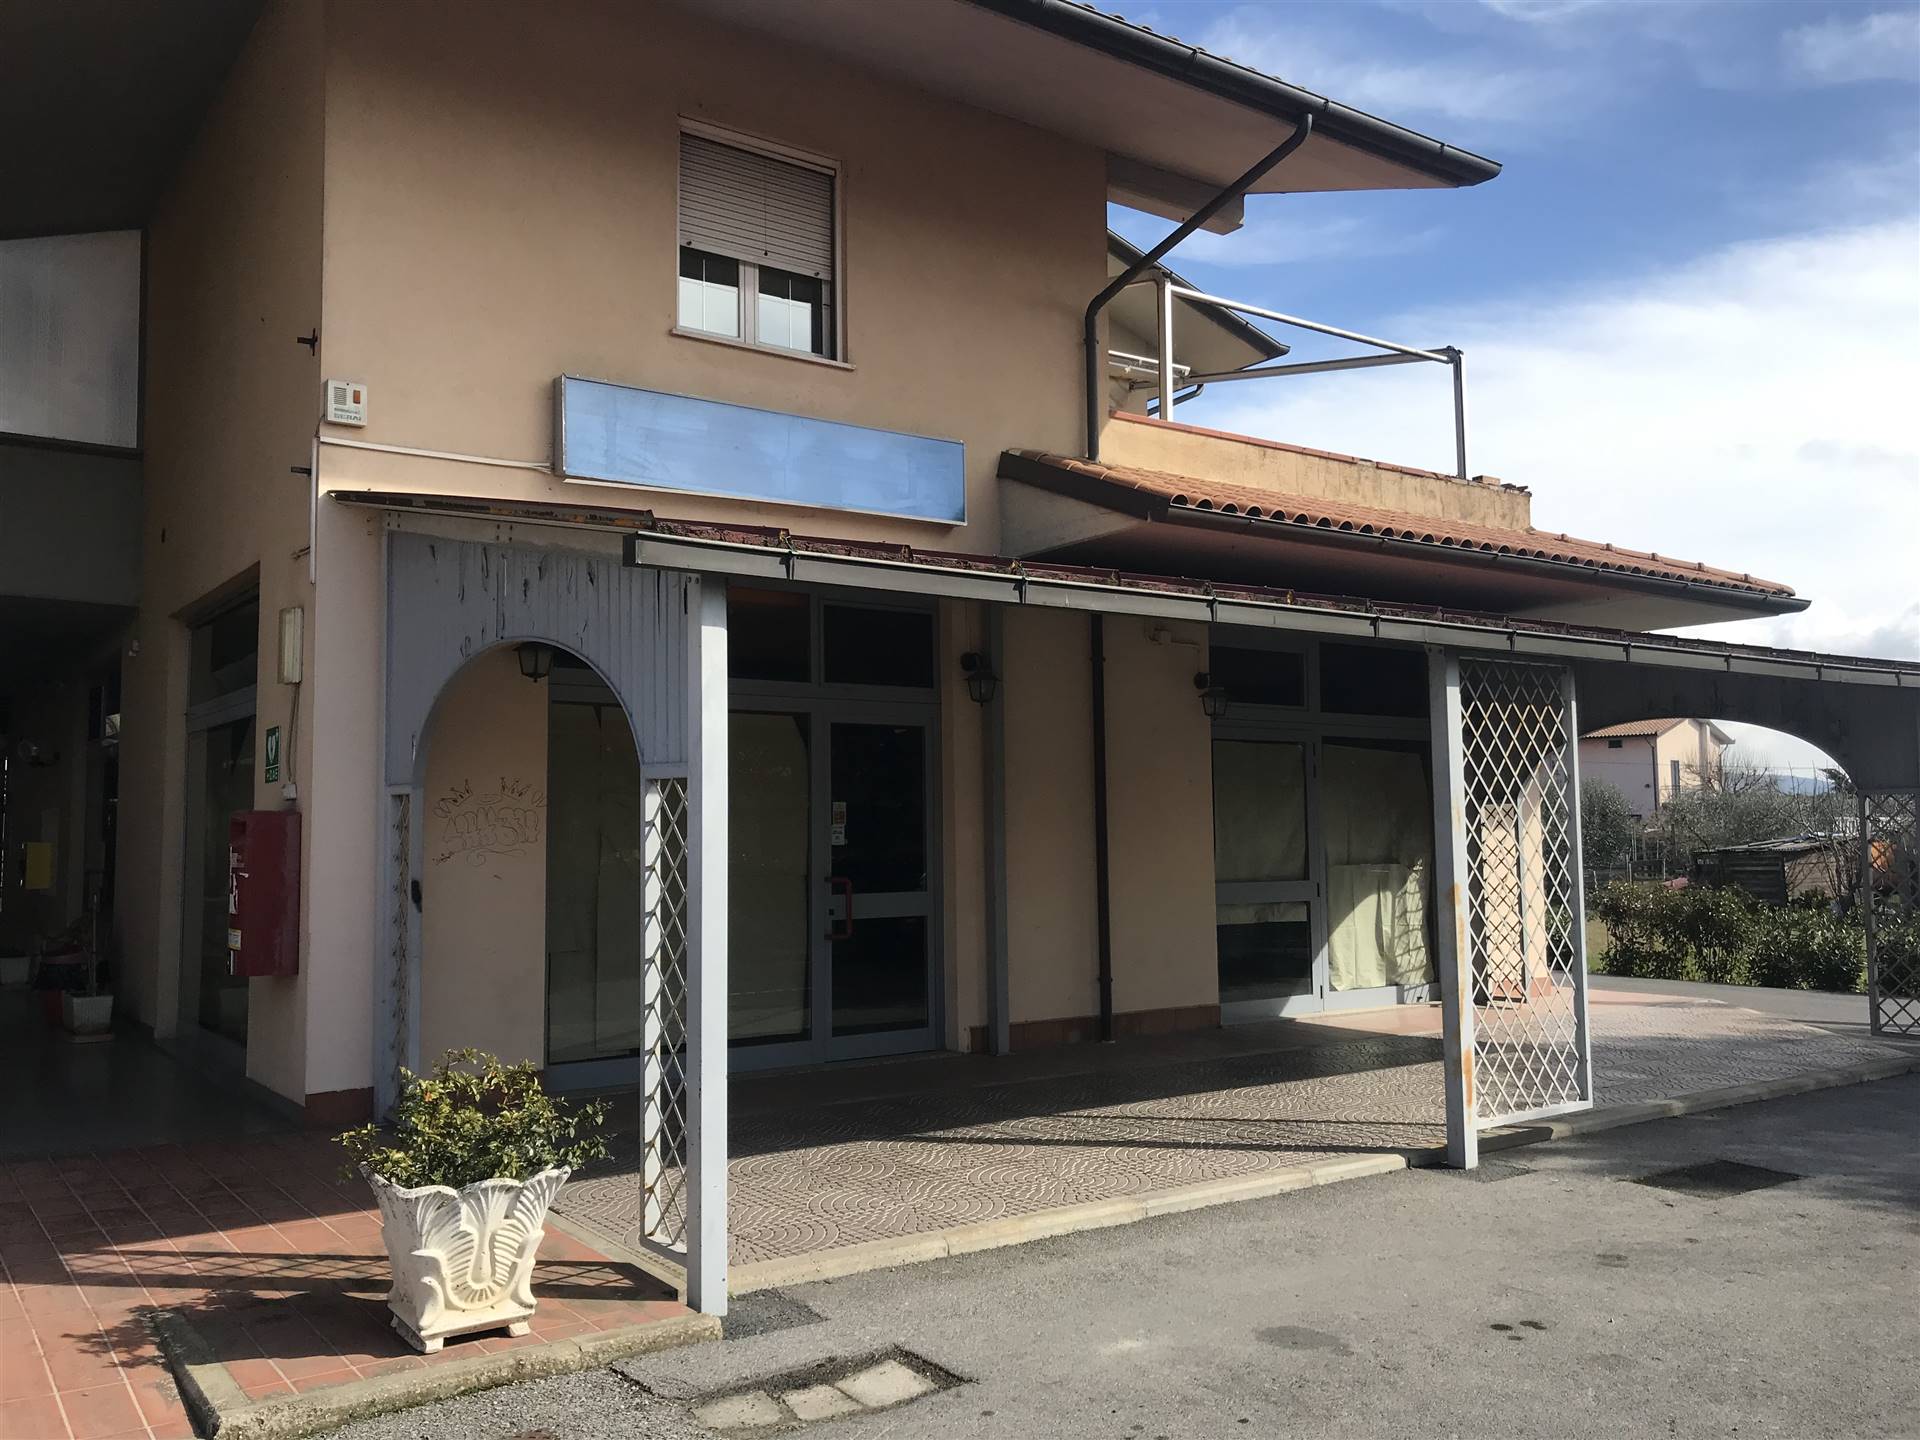 Attività / Licenza in affitto a Castiglione del Lago, 1 locali, zona Località: PUCCIARELLI, prezzo € 600 | PortaleAgenzieImmobiliari.it